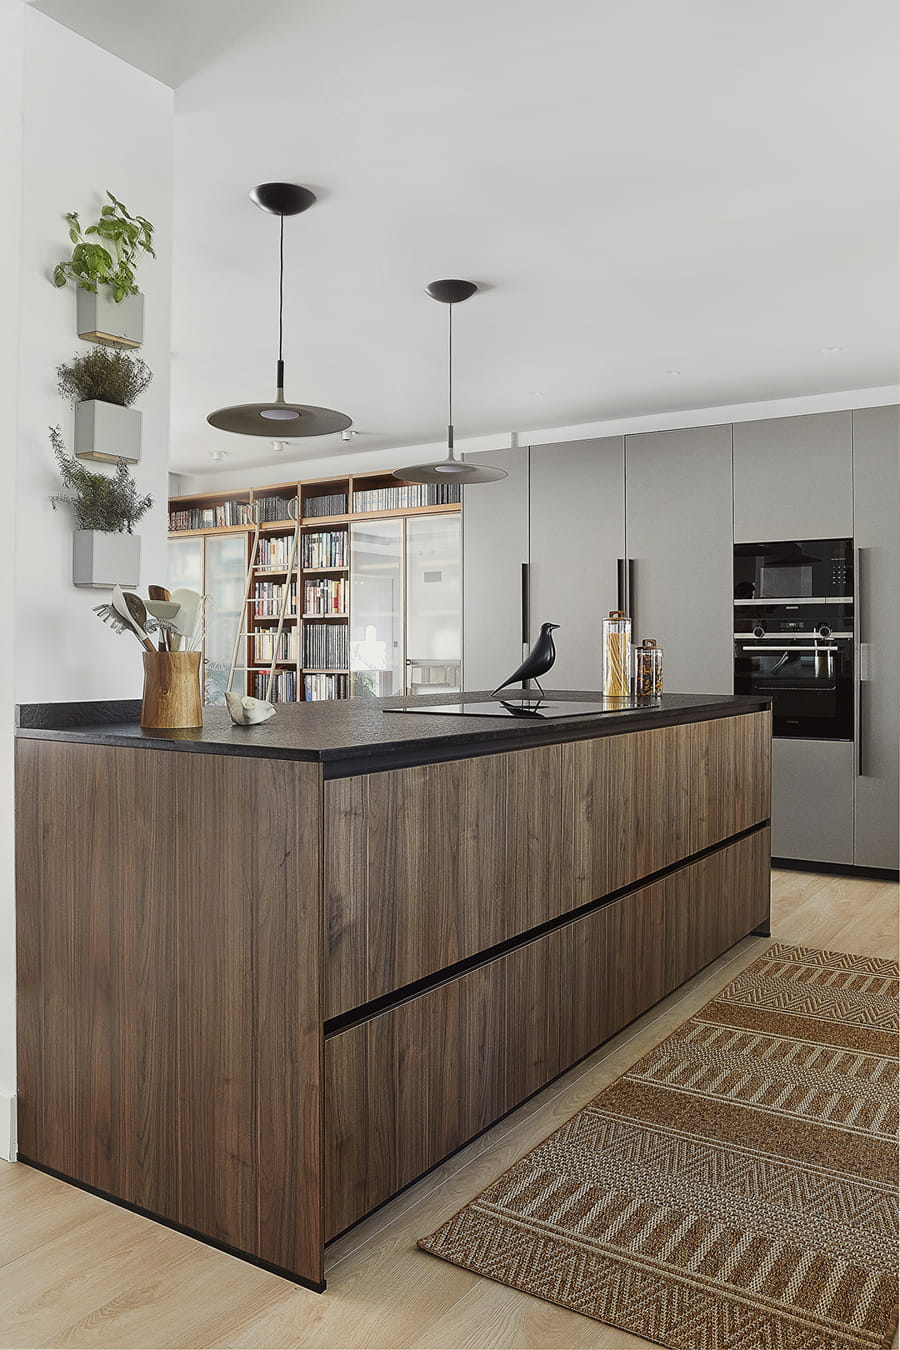 Centre island in grey and walnut wood kitchen, open-plan design, Santos.